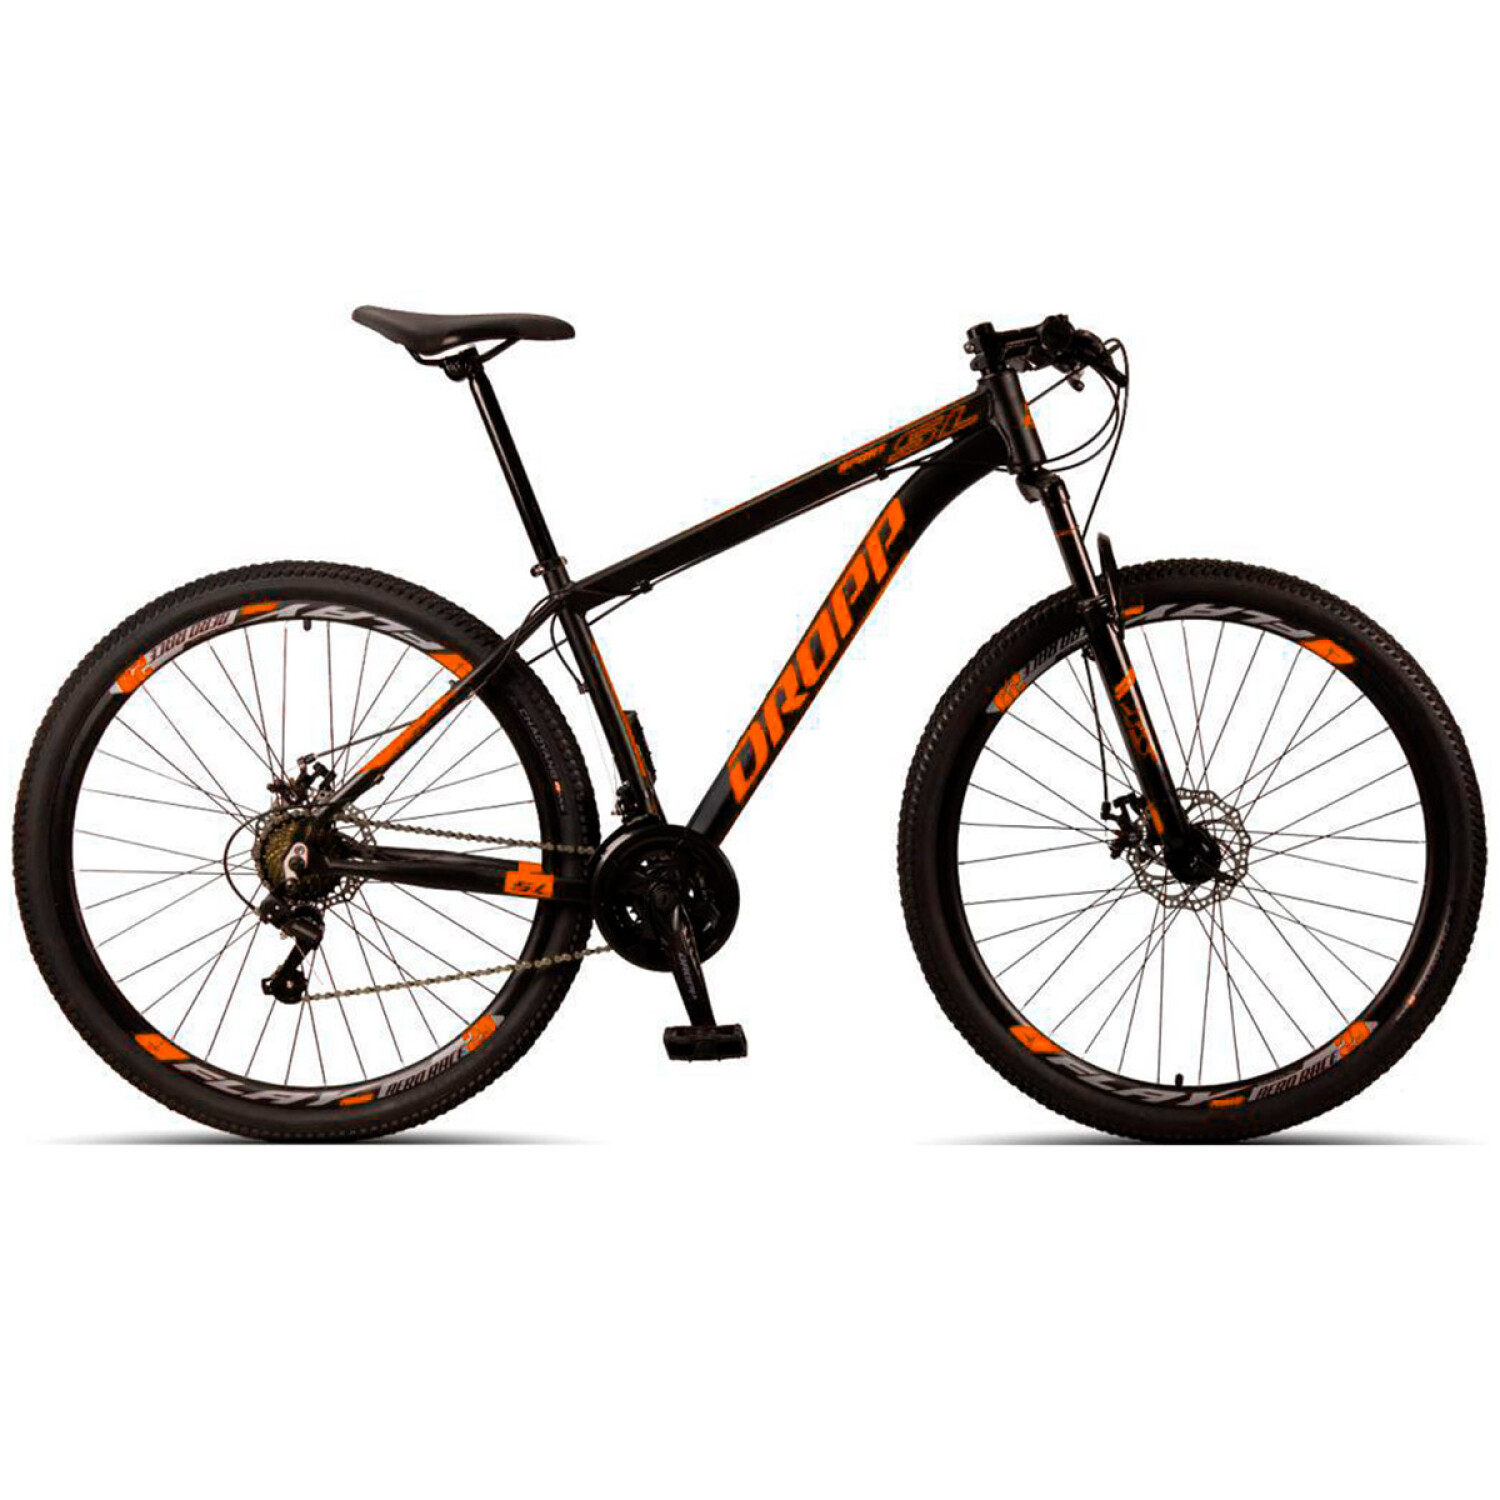 Bicicleta Montaña Dropp Rodado 29 Aluminio Cambios Shimano - Negro-Naranja  — El Rey del entretenimiento